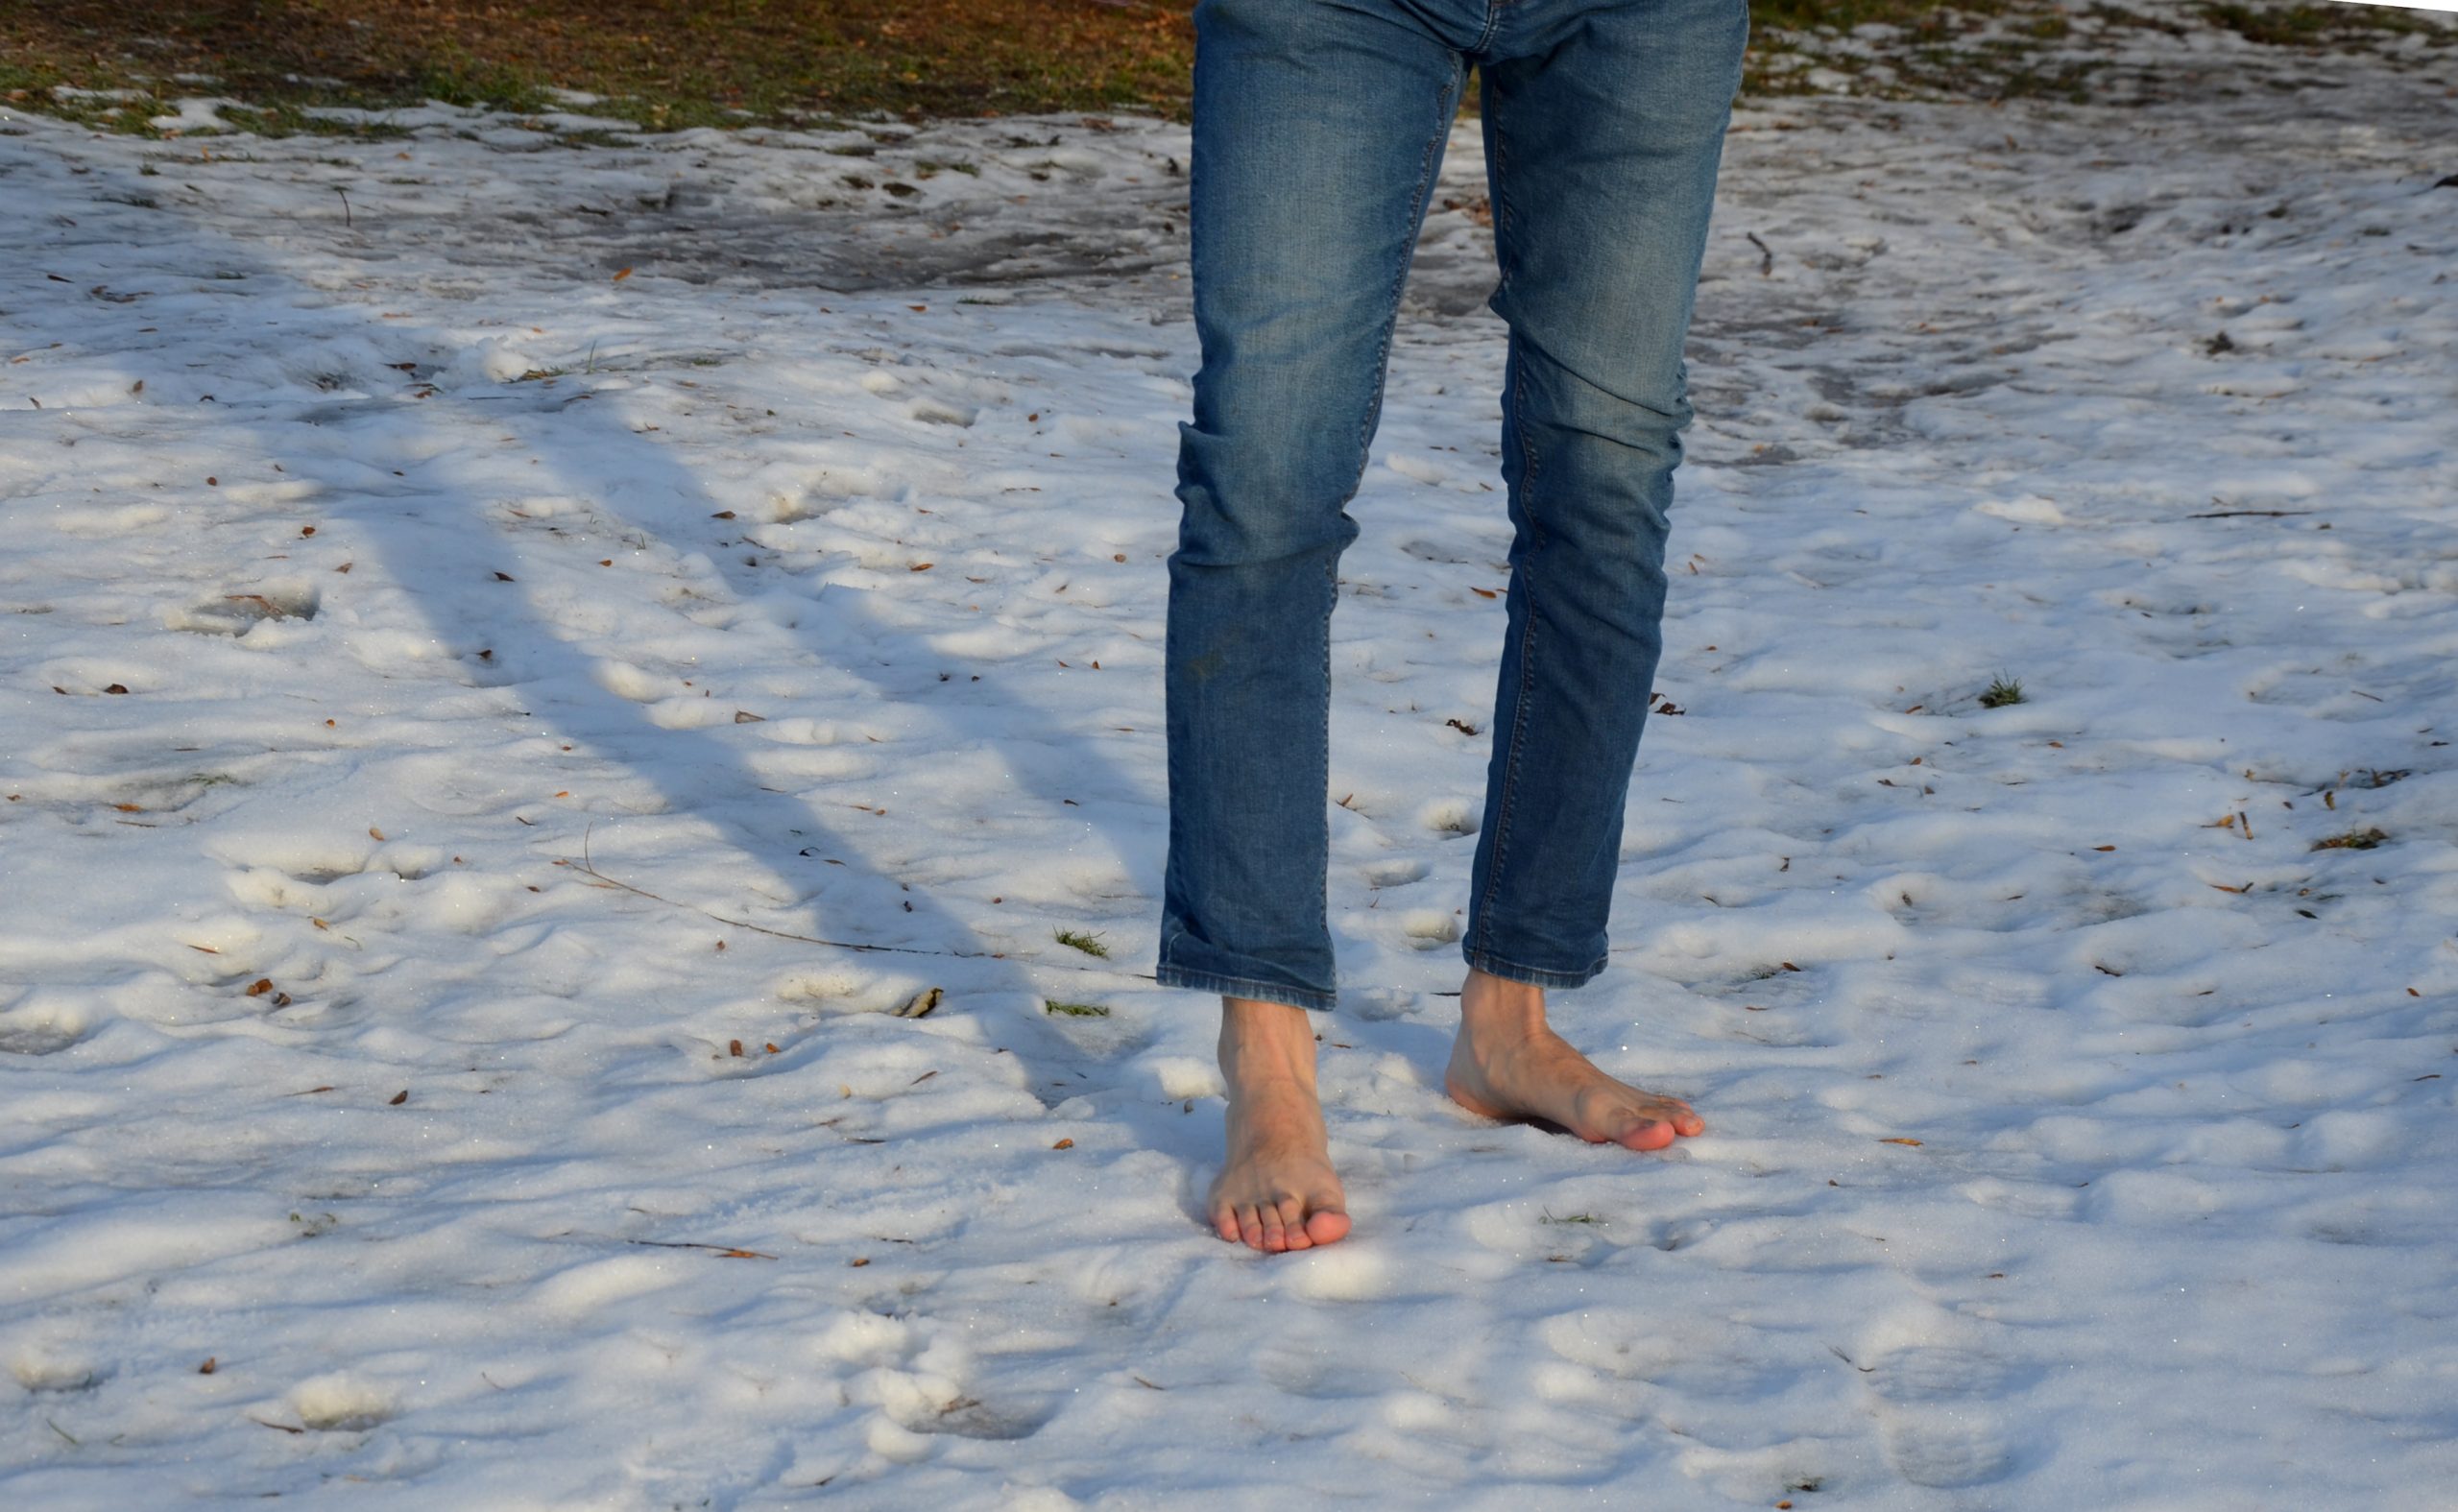 Comment éviter les engelures aux pieds cet hiver?